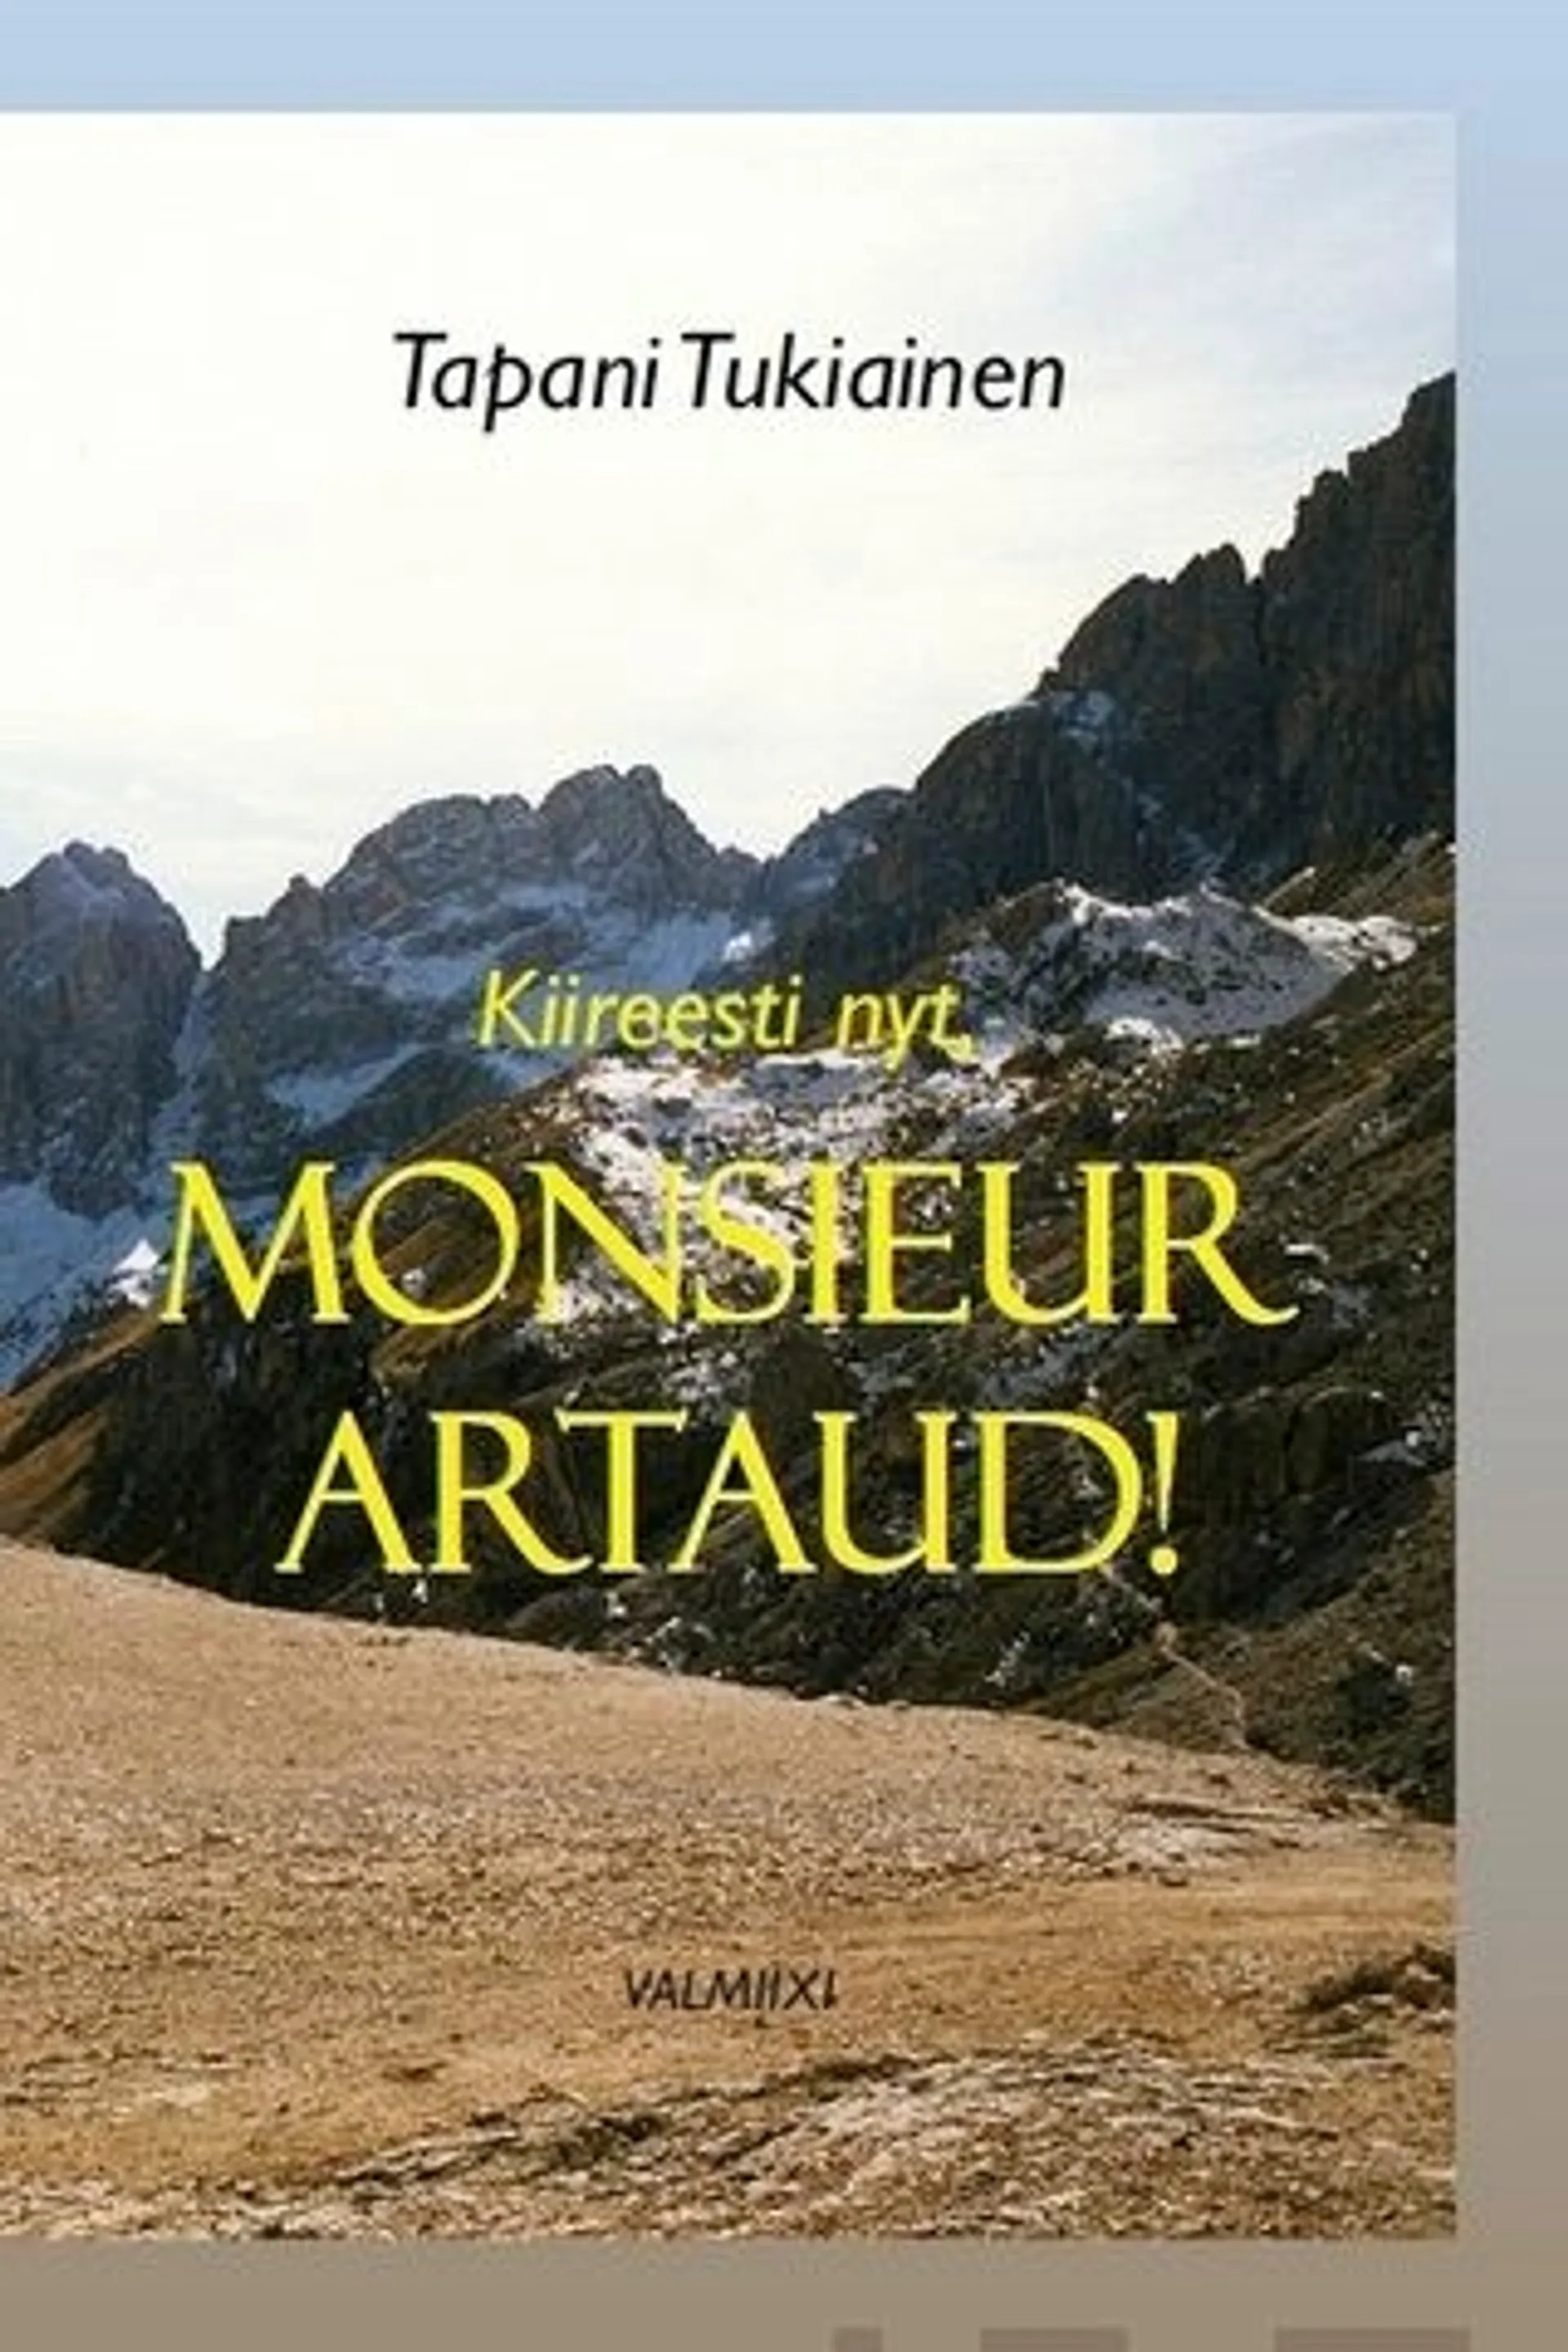 Tukiainen, Kiireesti nyt, monsieur Artaud!